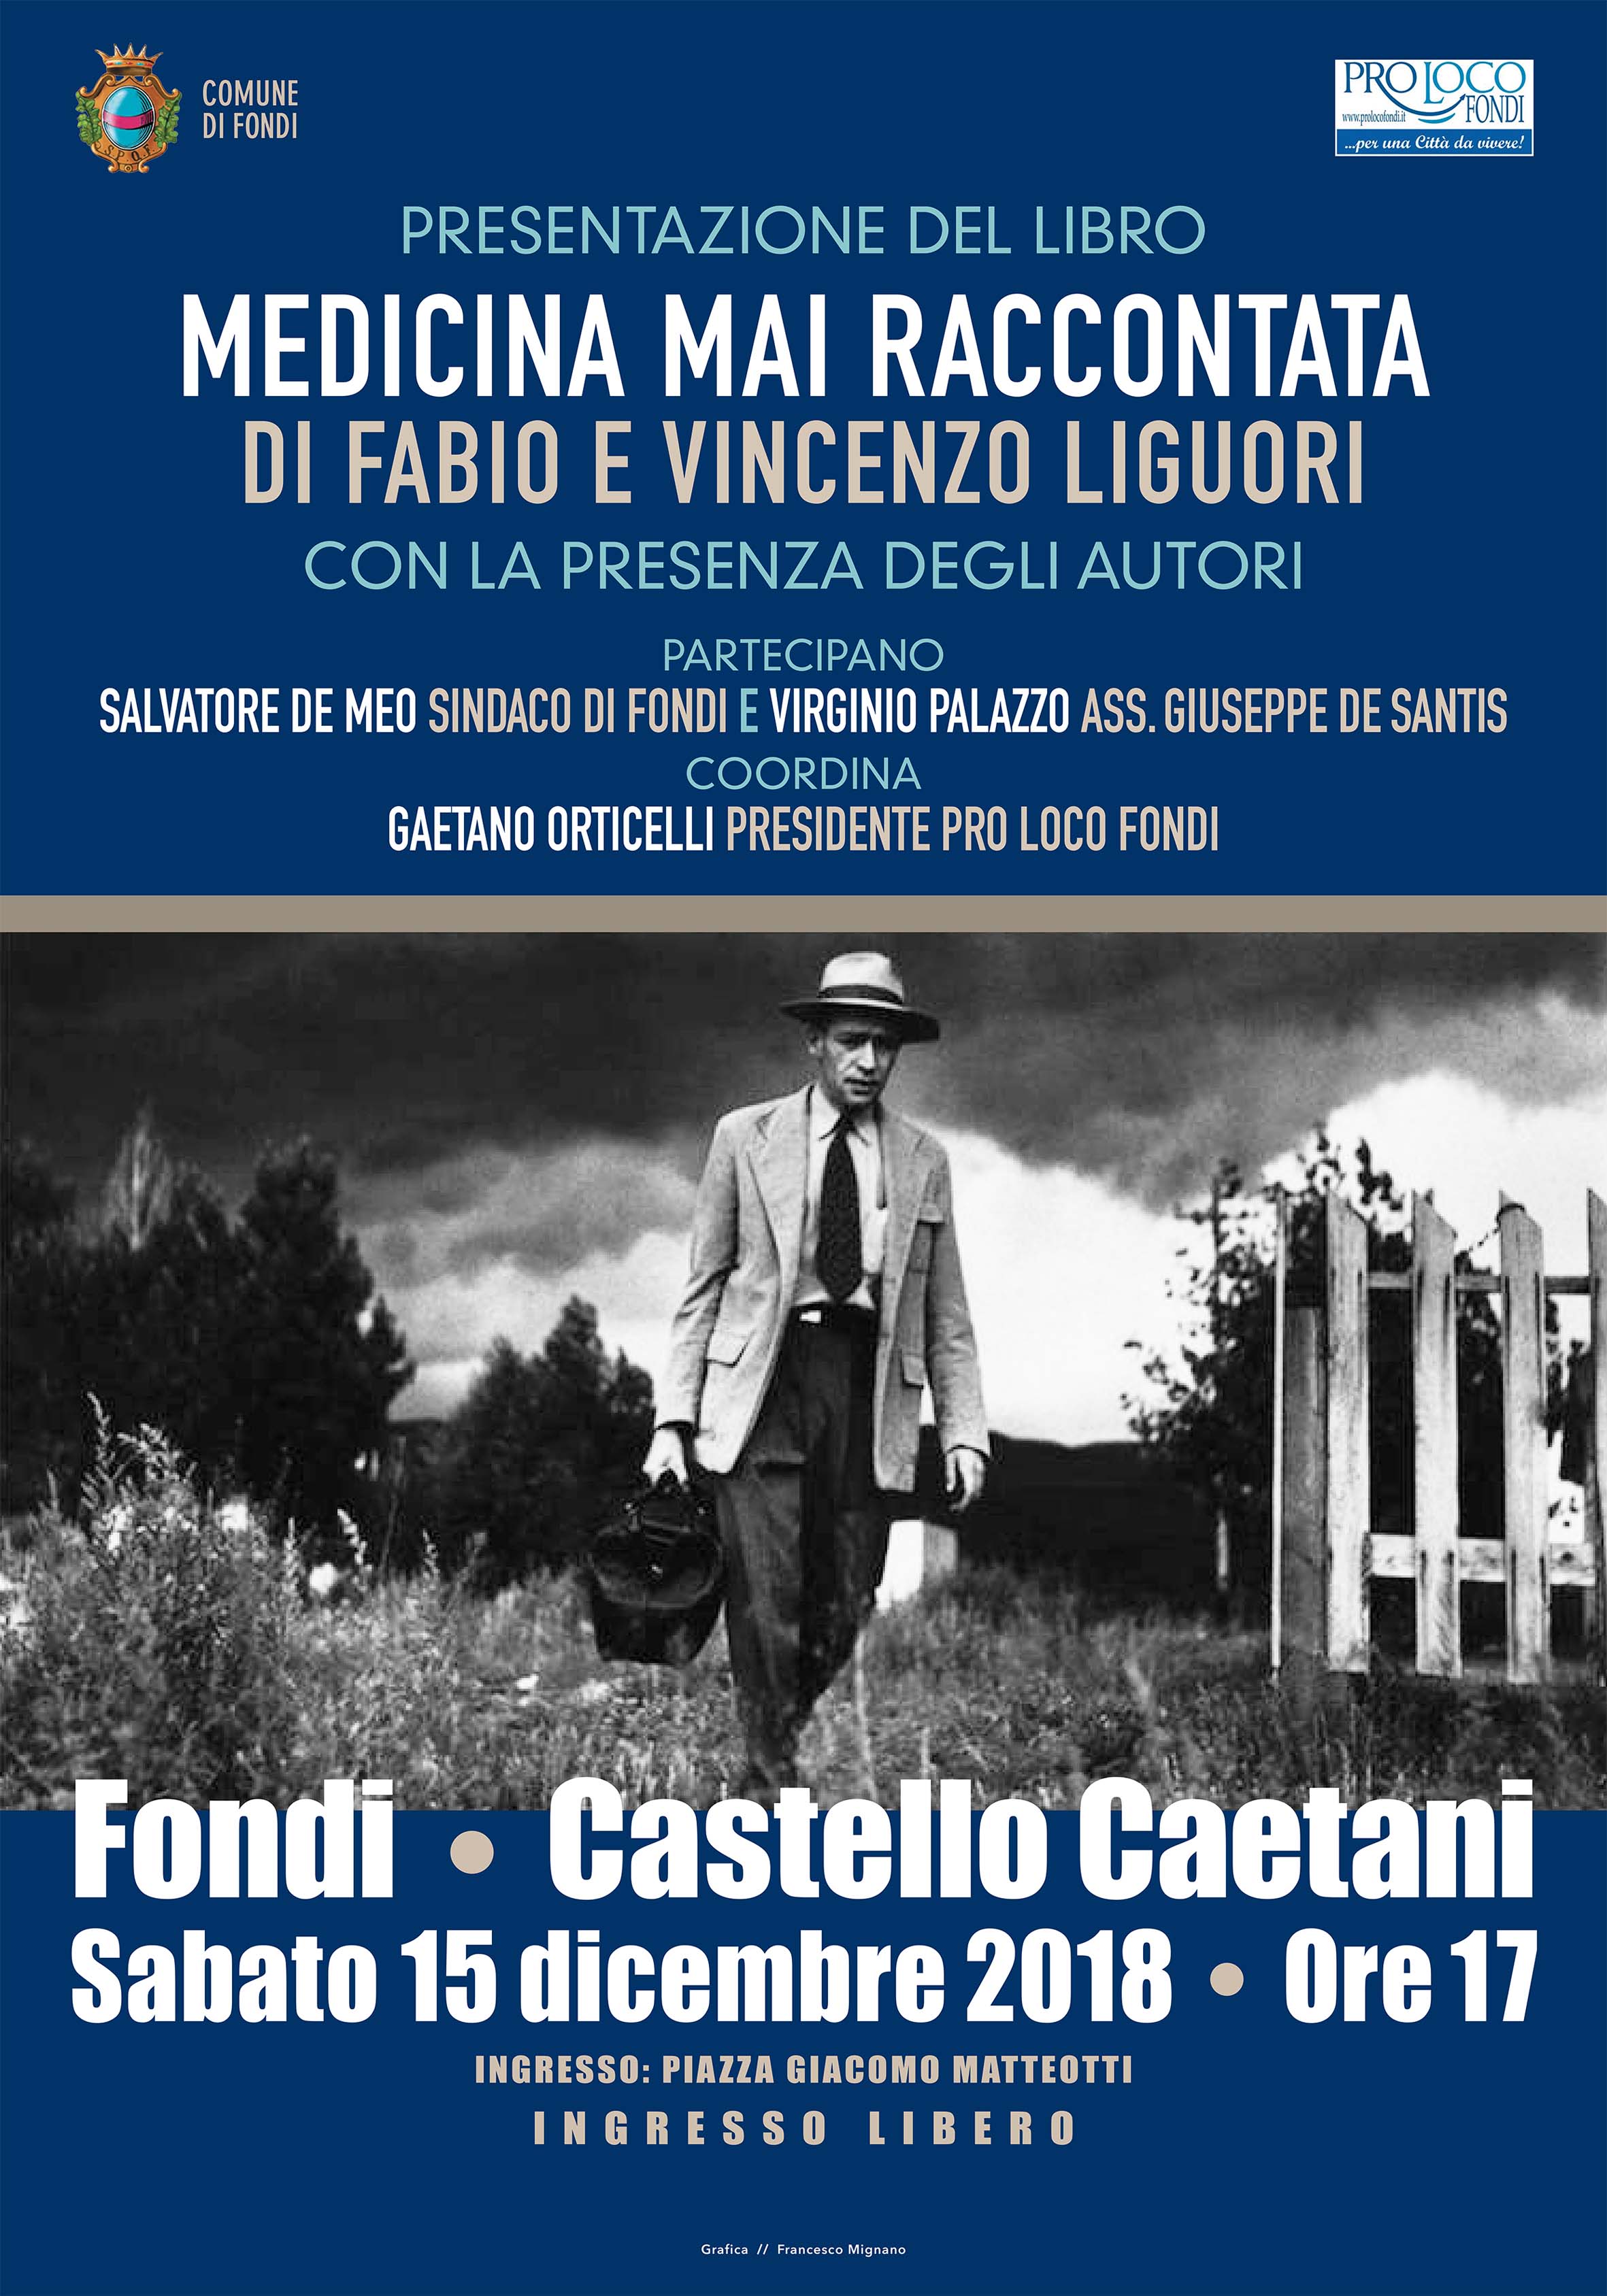 Libri: La “Medicina mai raccontata” di Fabio e Vincenzo Liguori al Castello Caetani di Fondi